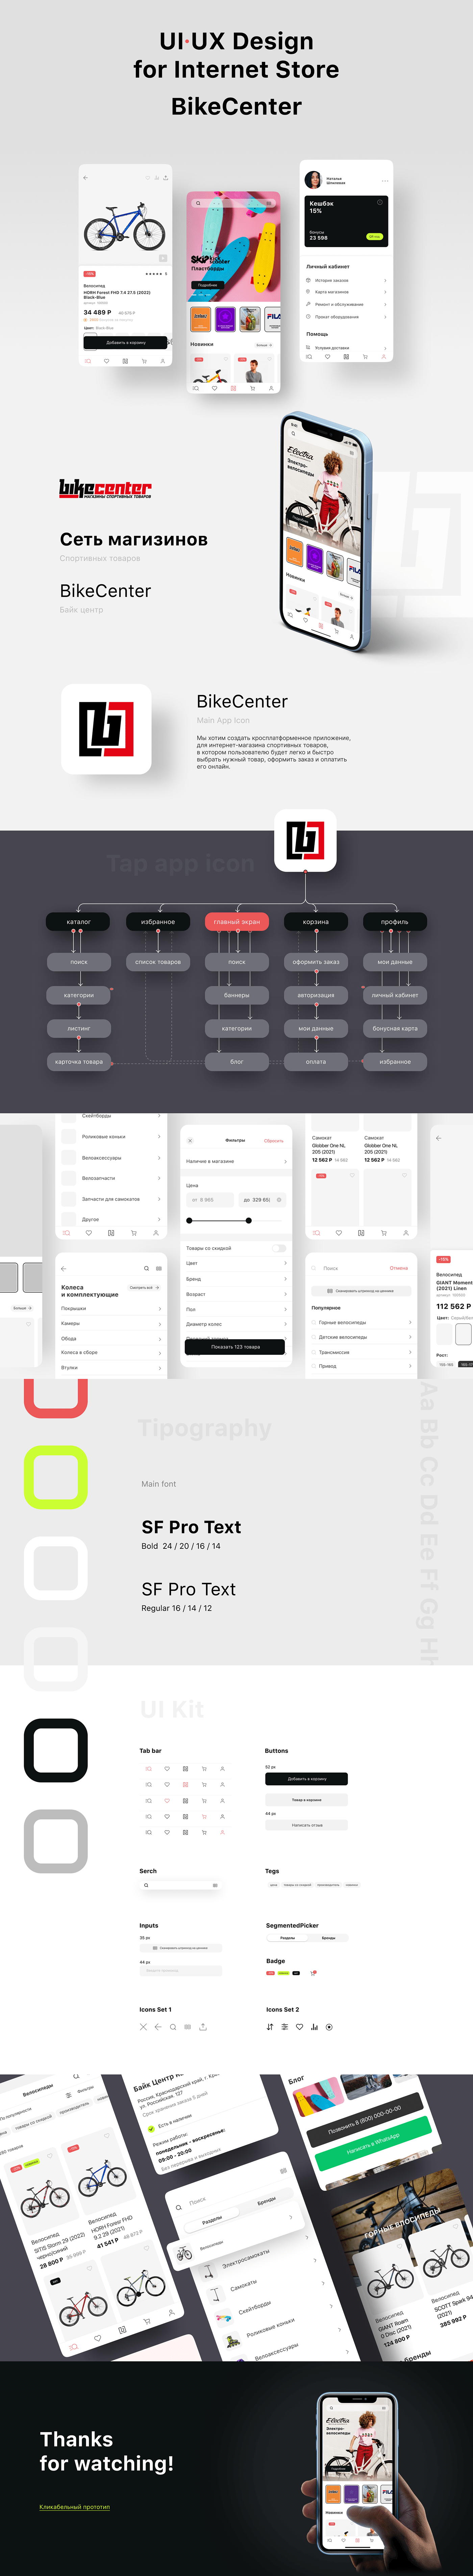 Figma Interface Mobile app UI ui design UI/UX user interface Web